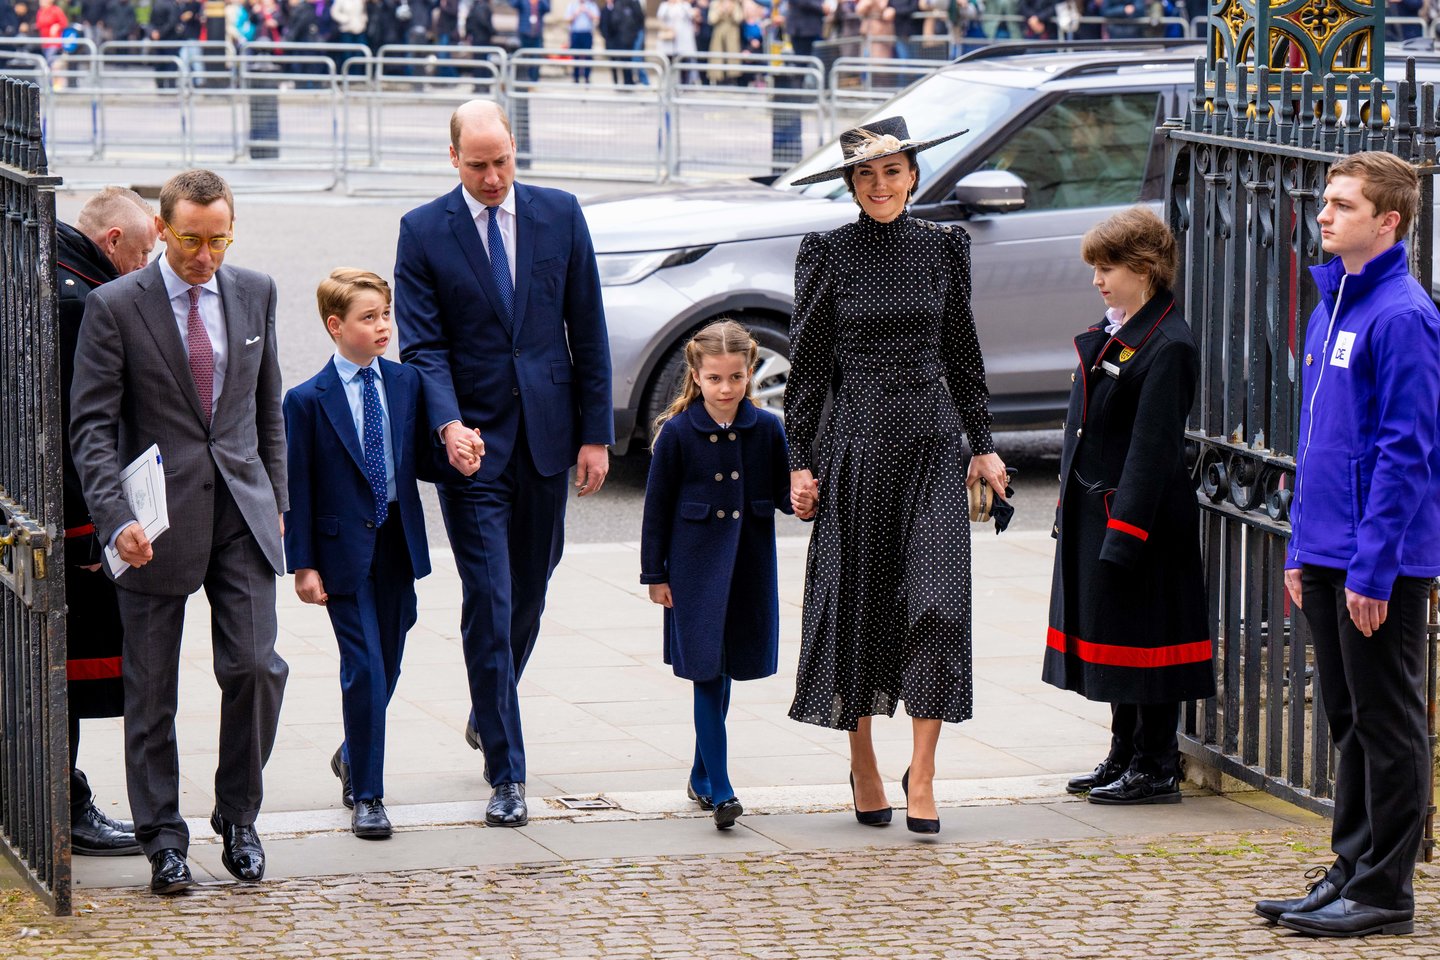  Princas Williamas, Catherine Middleton su vaikais.<br> Scanpix/CO nuotr.